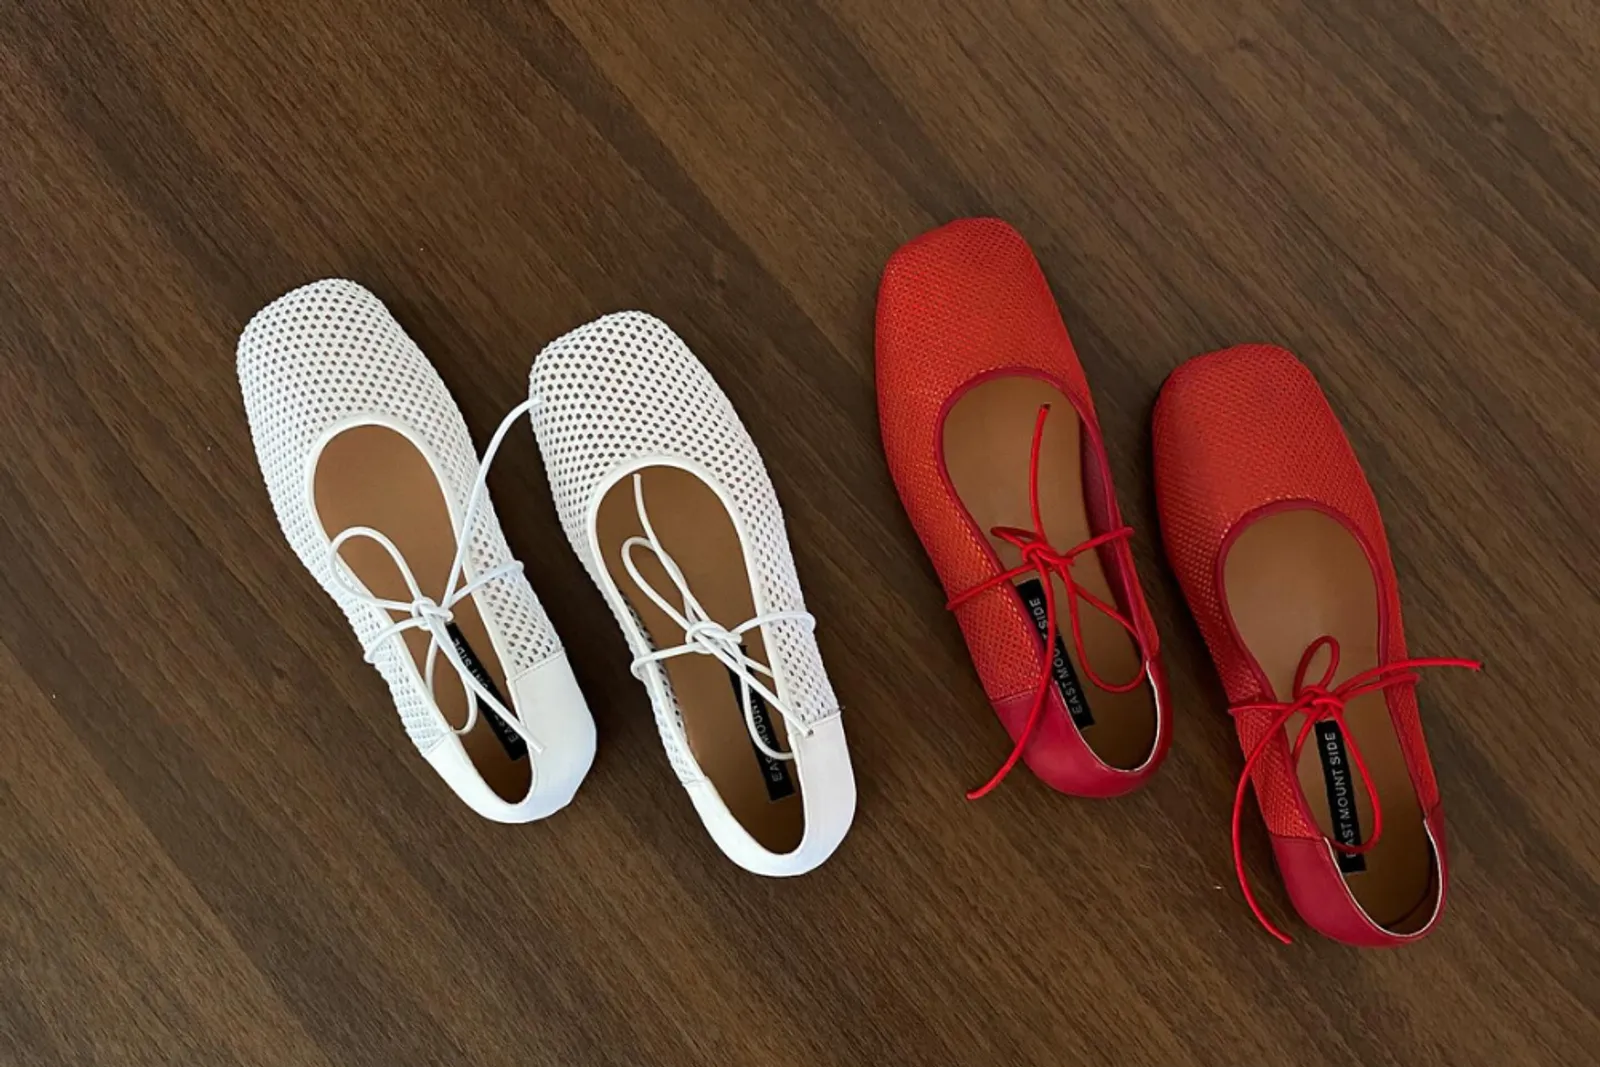 7 Toko Sepatu Terdekat di Jogja yang Bagus untuk Perempuan